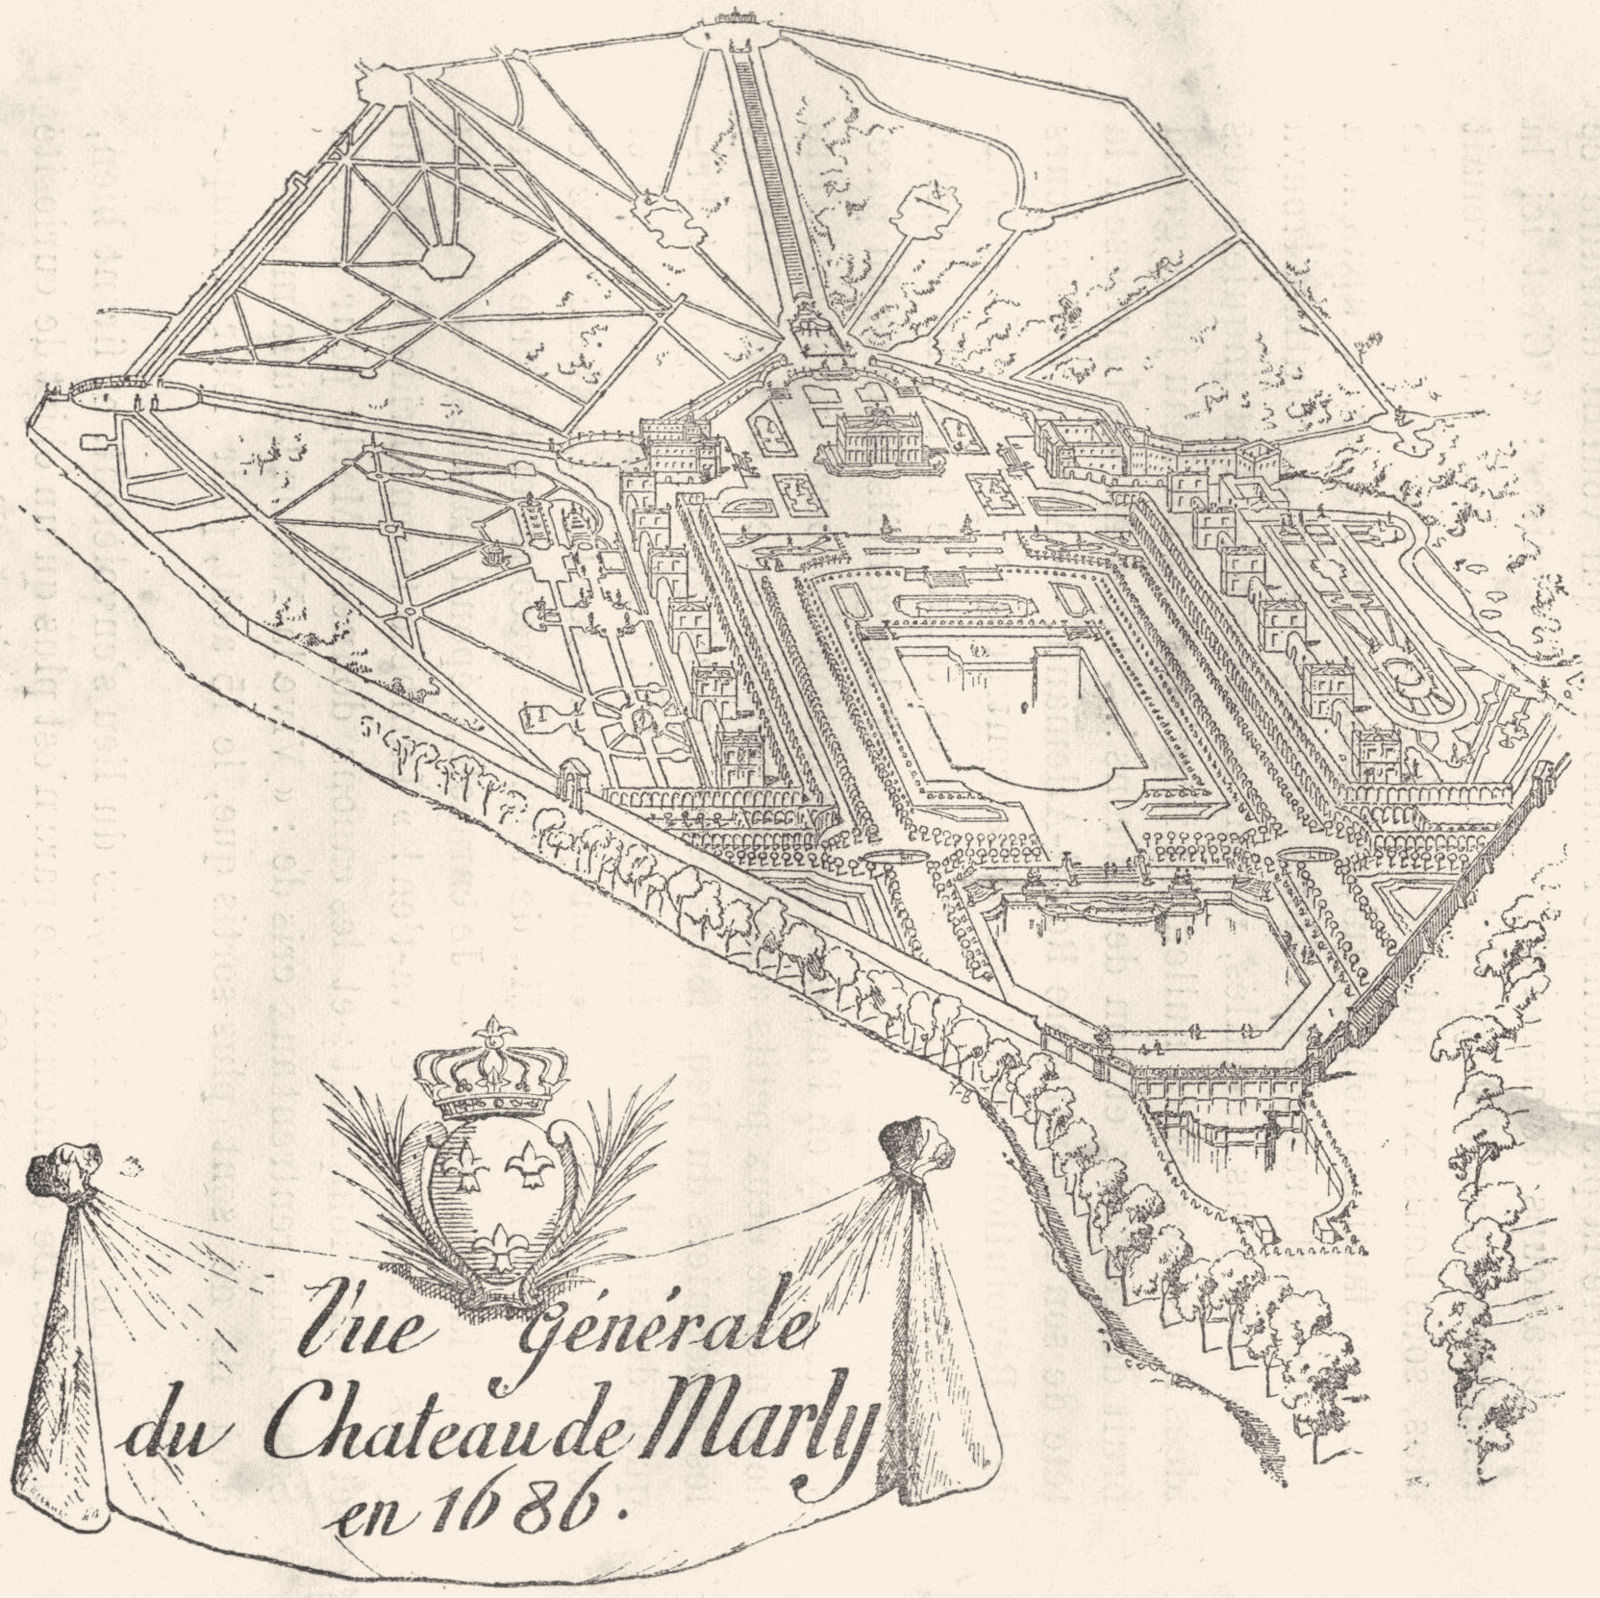 Associate Product YVELINES. The generale du Chateau de Marly en 1686 1880 old antique print